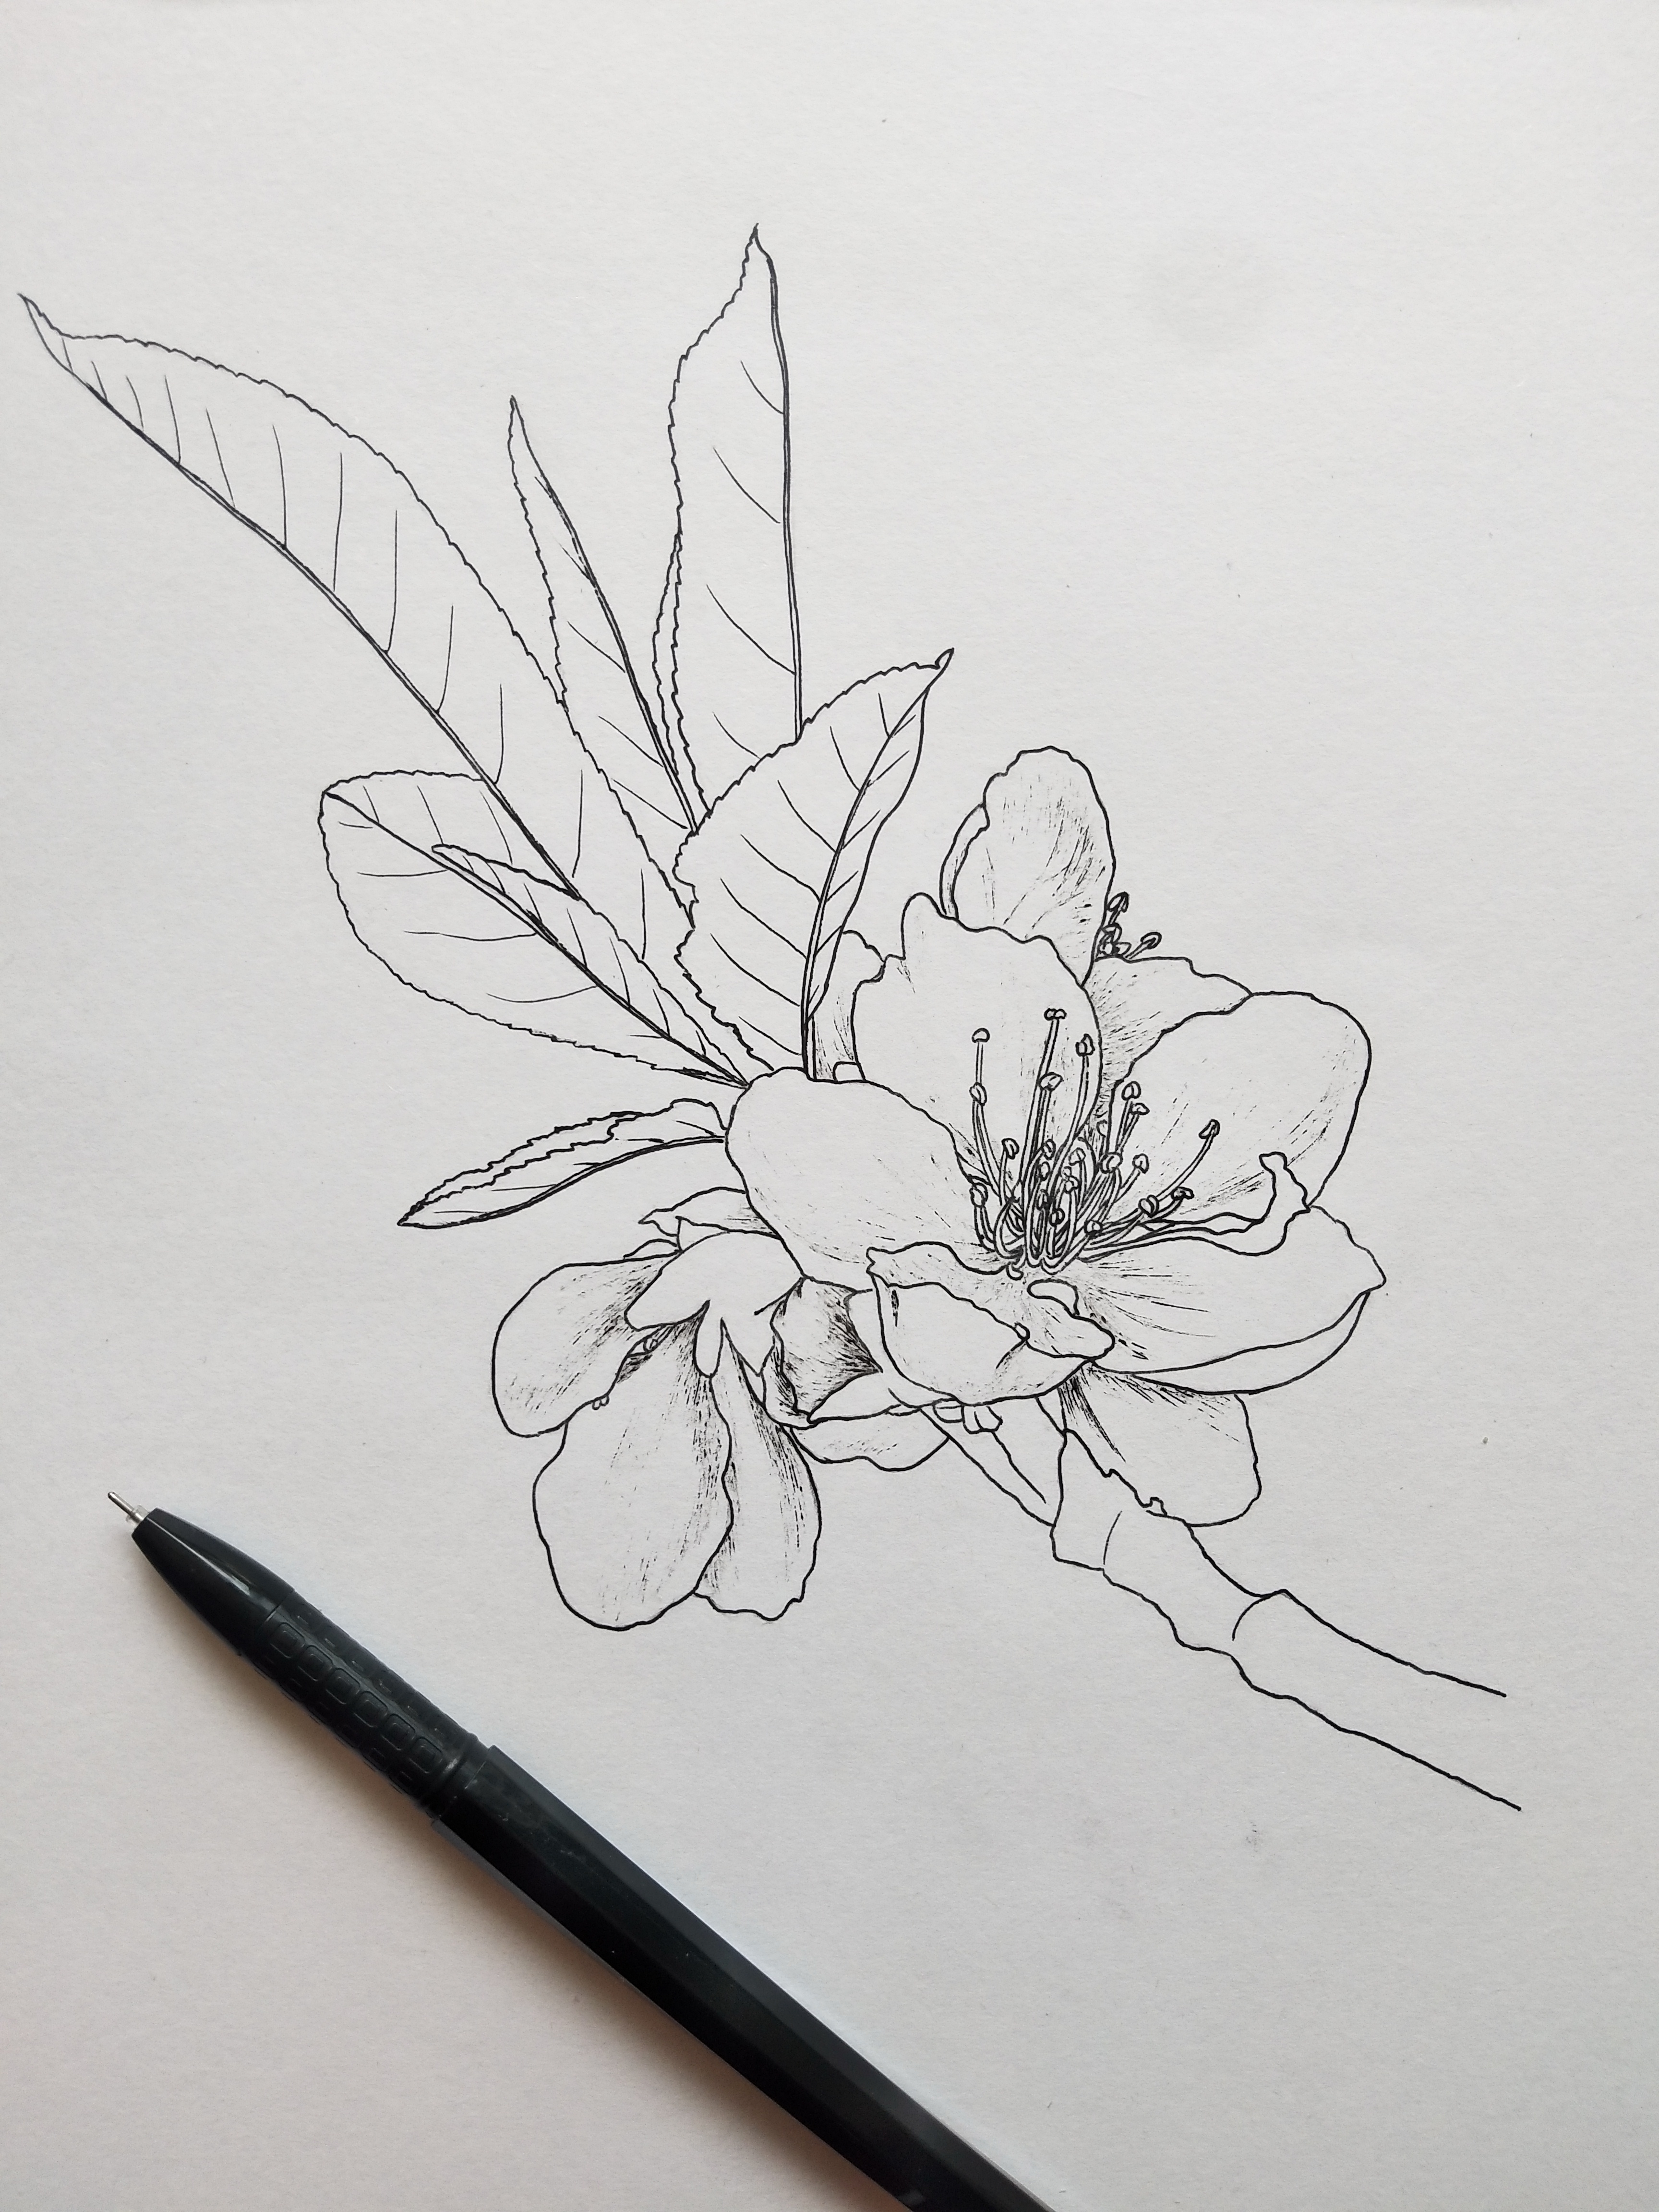 植物写生桃花图片